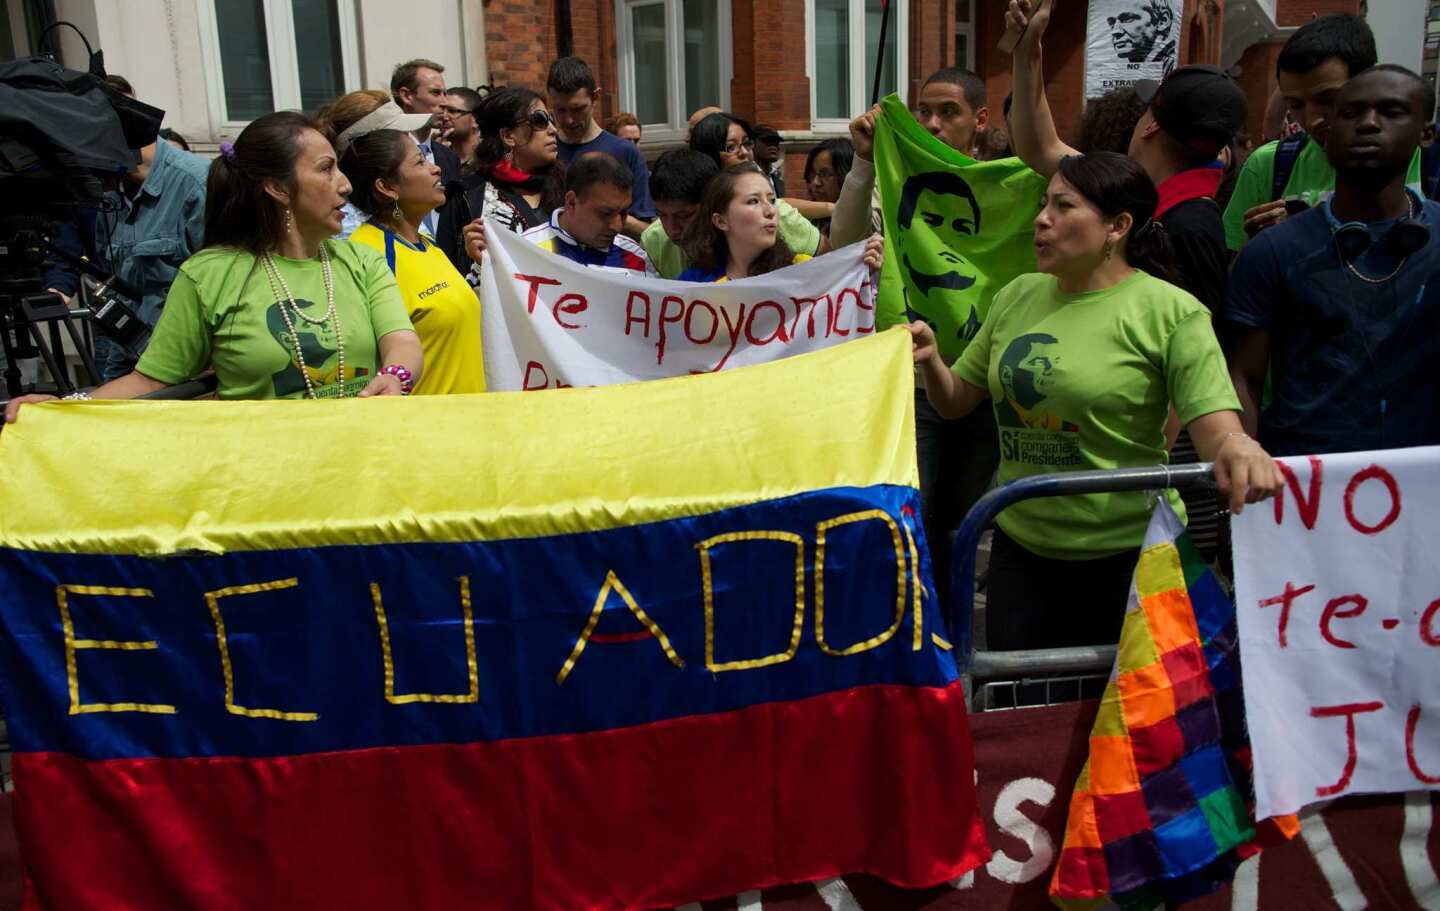 Ecuadorians and supporters of Julian Ass